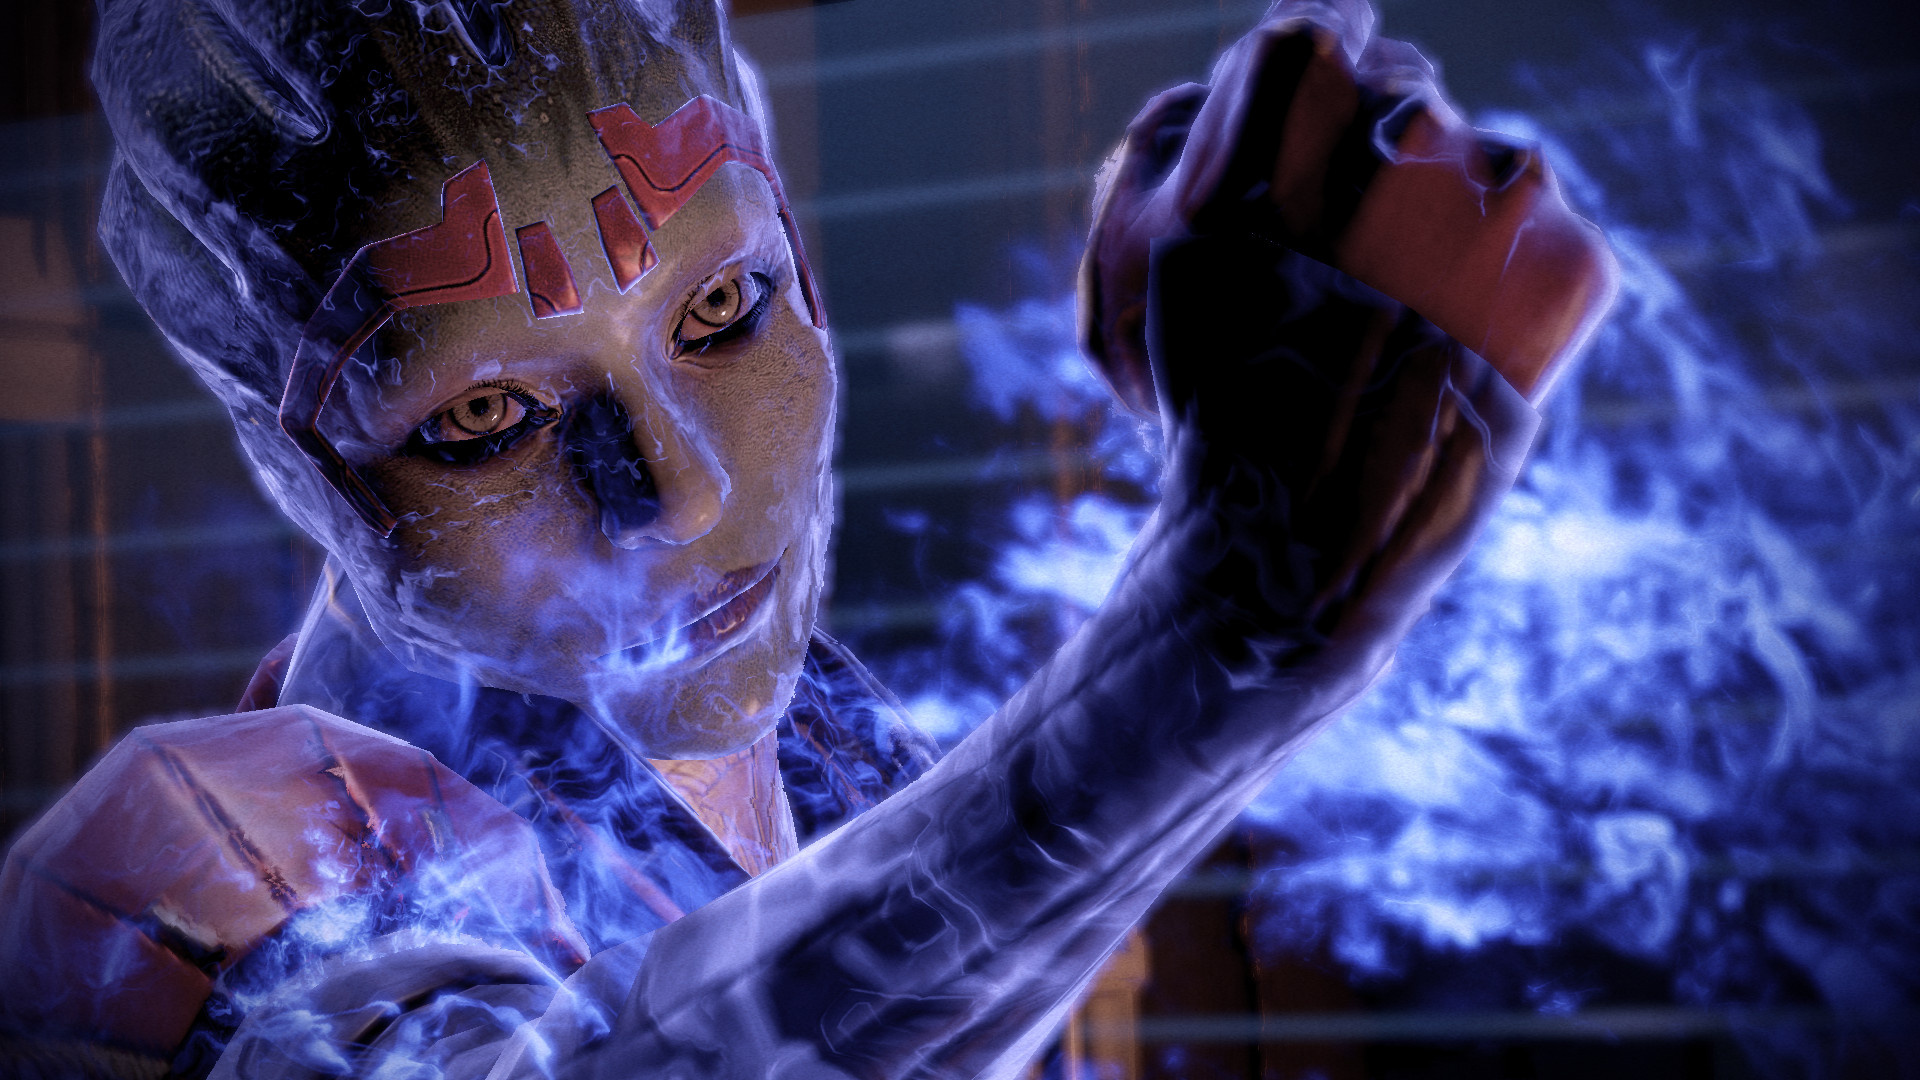 Mass Effect 2: Kasumi, Samara Mass Effect, HD wallpapers, 1920x1080 Full HD Desktop